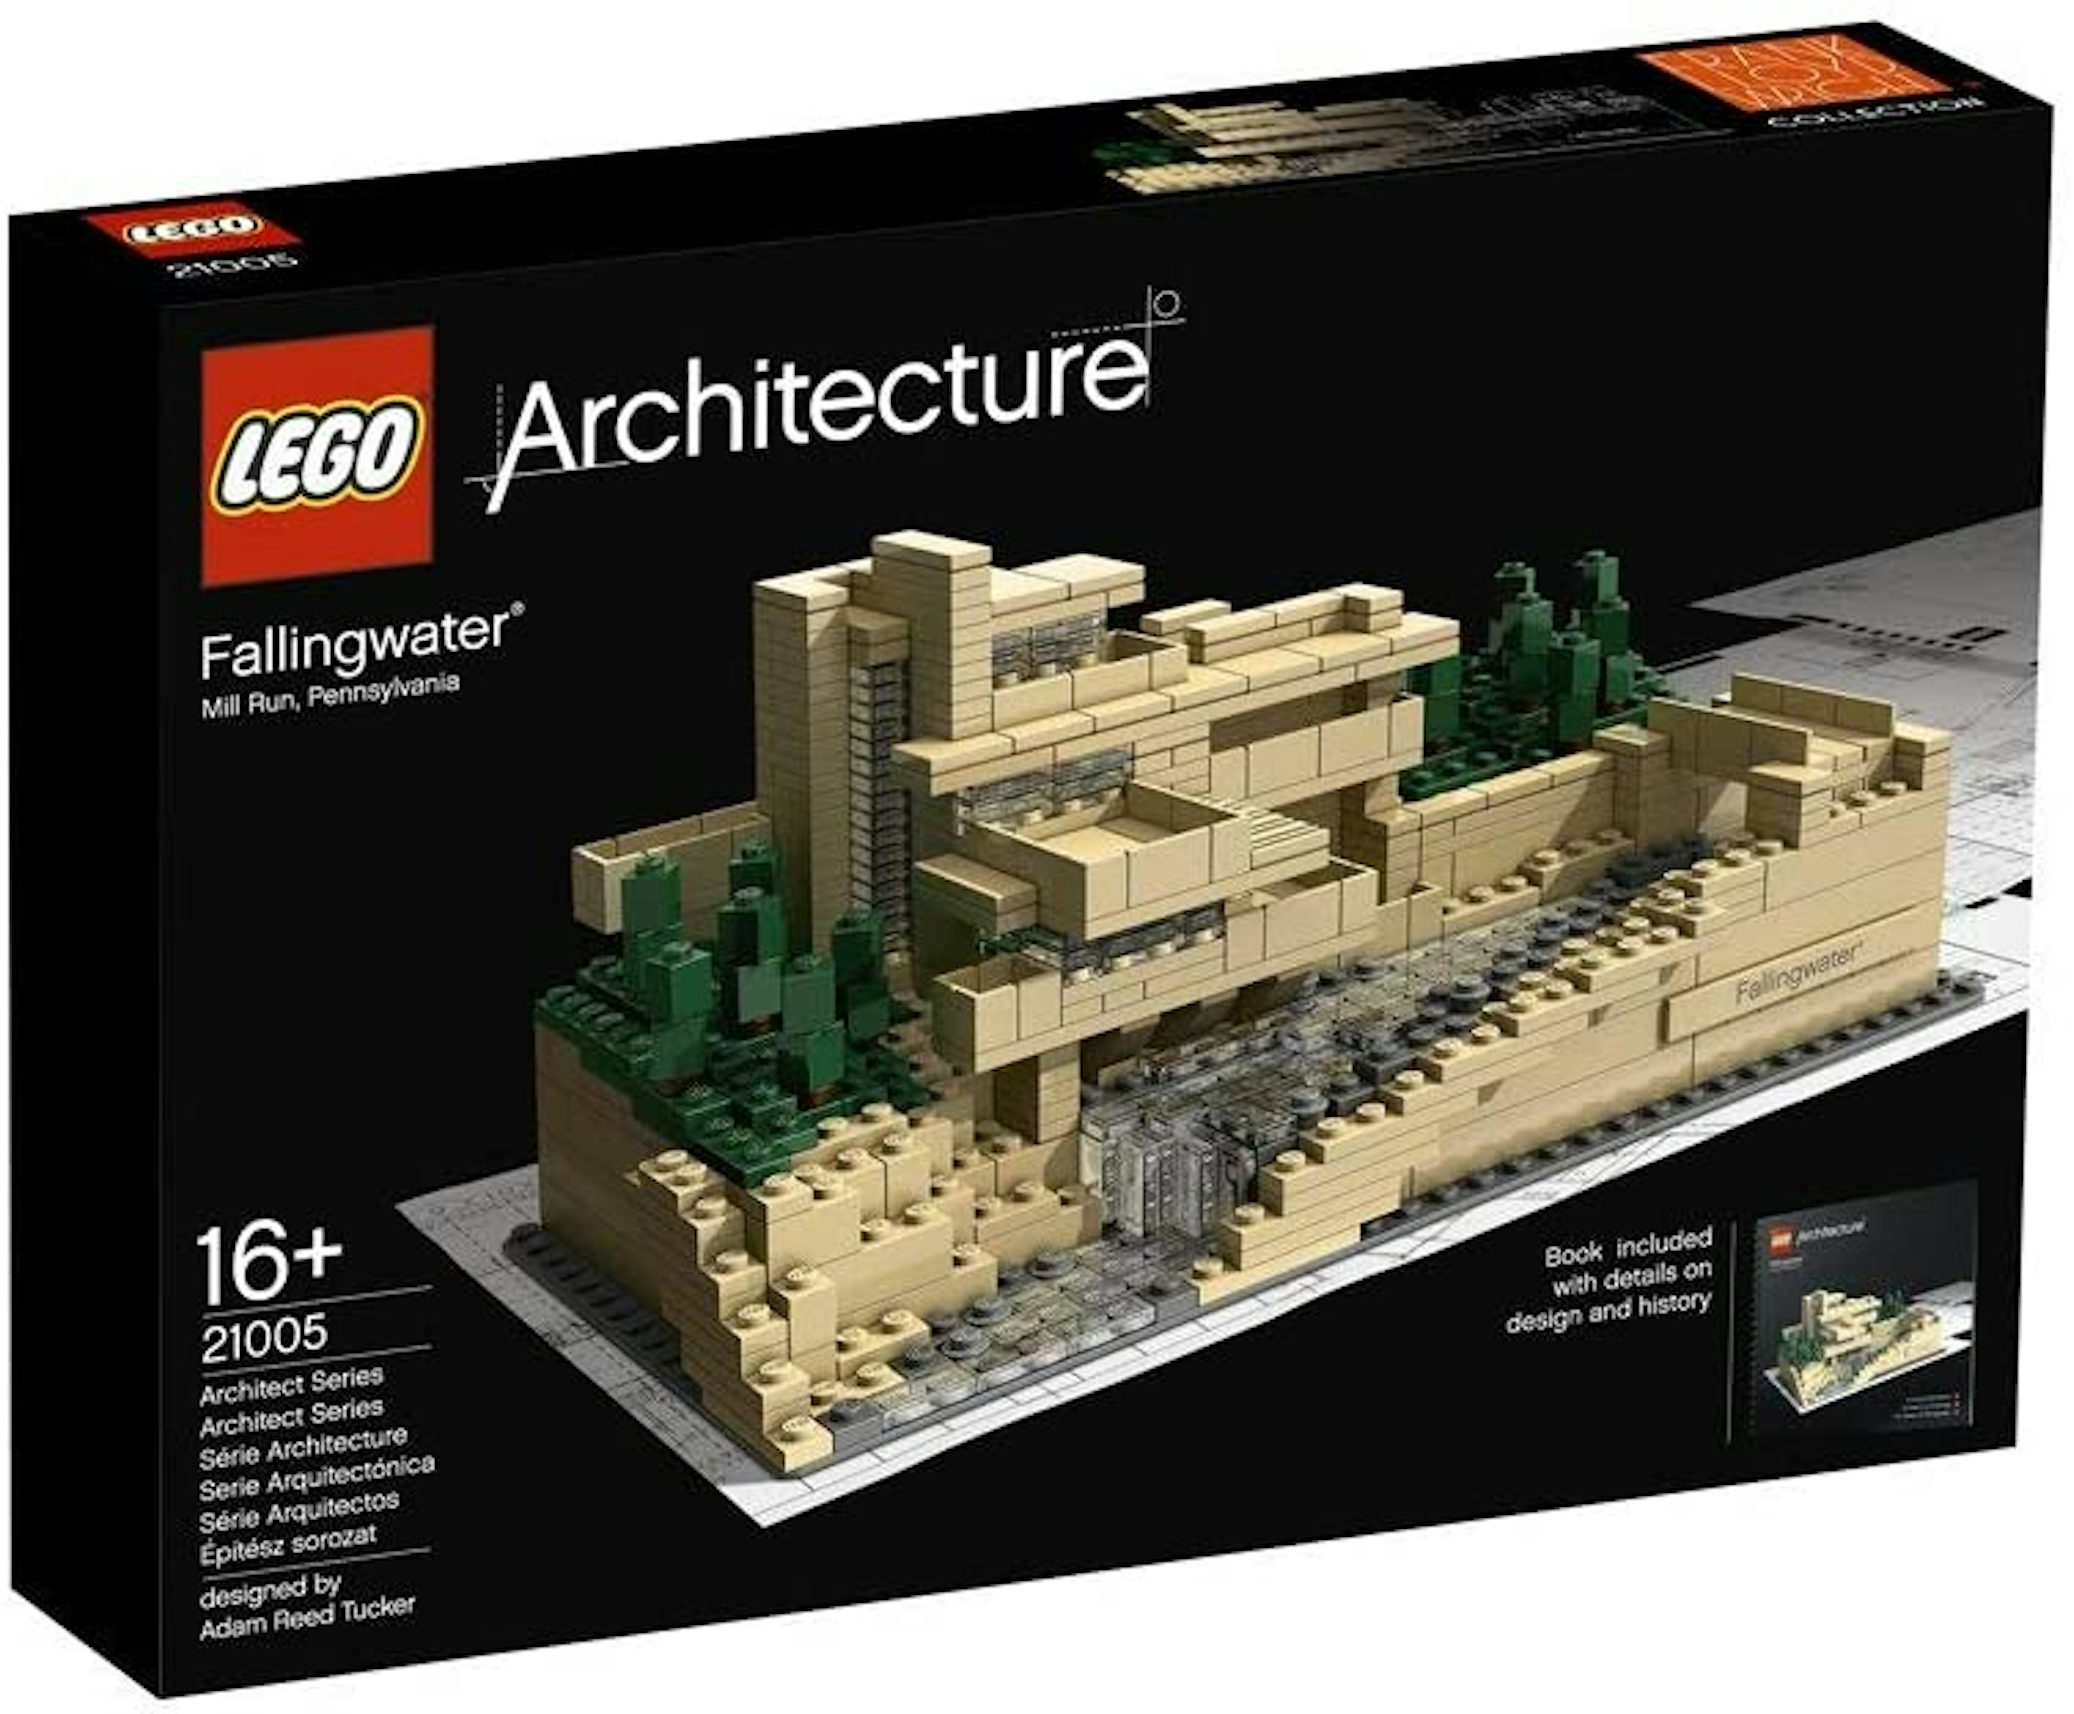 The LEGO Architect –